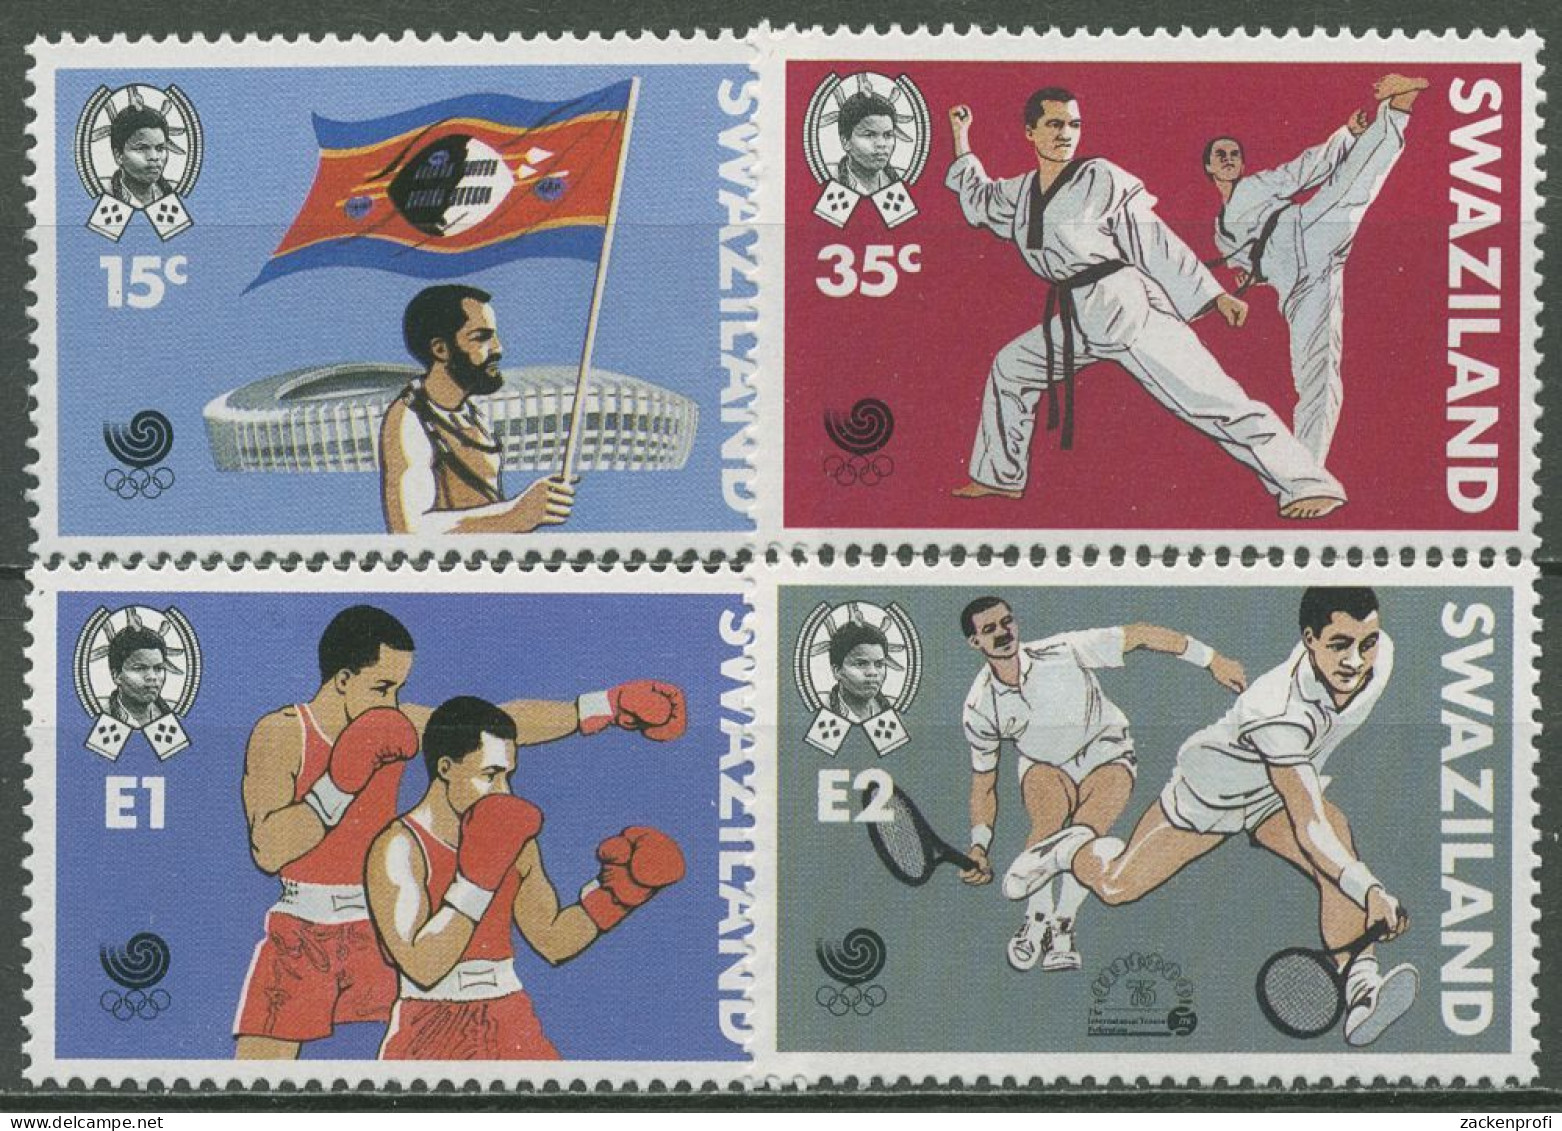 Swaziland 1988 Olympische Sommerspiele Seoul Boxen Tennis 544/47 Postfrisch - Swaziland (1968-...)